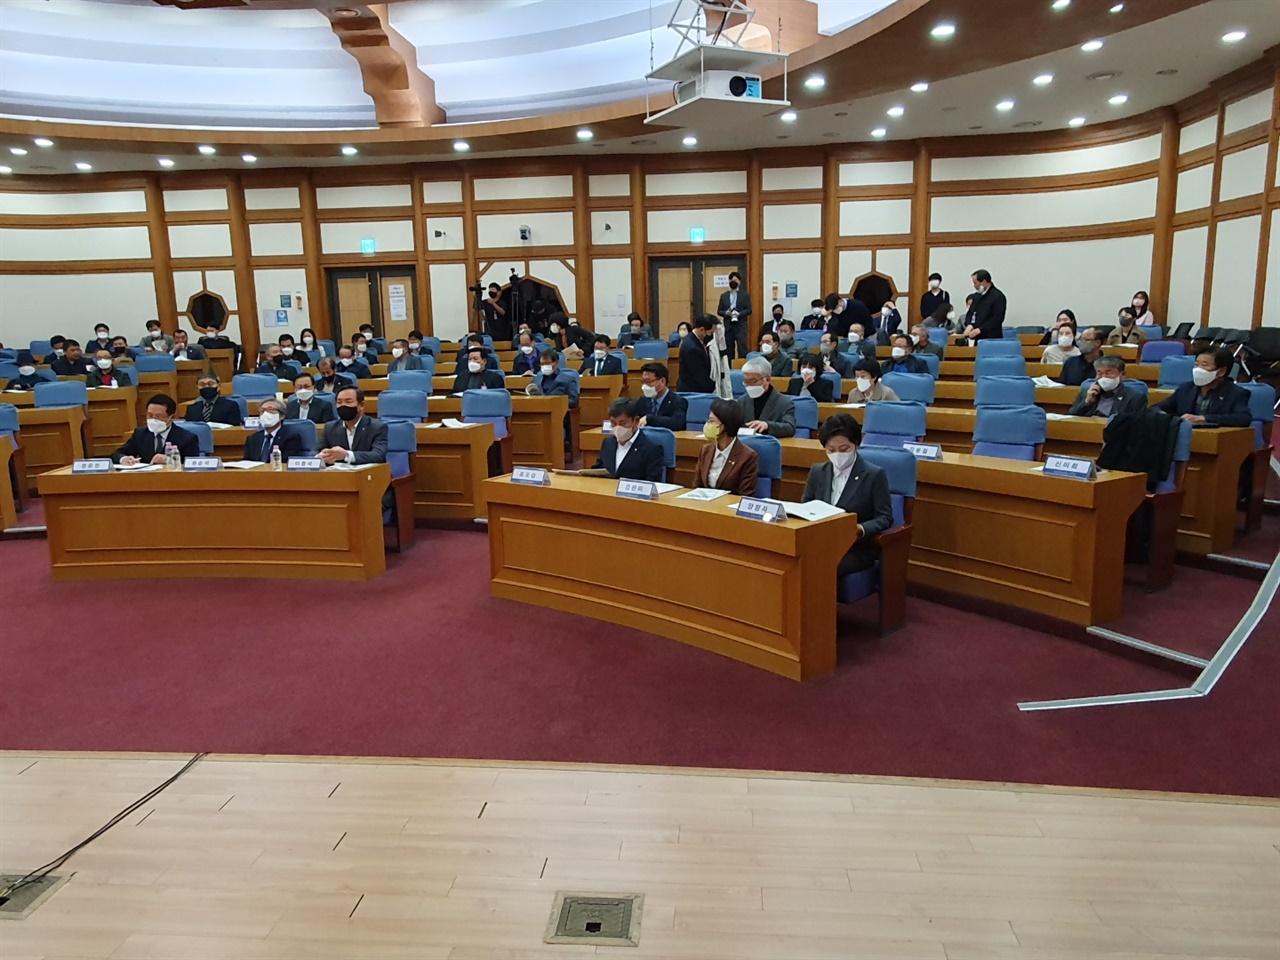 5.18 단체 주관으로 국회 의원회관에서 열린 정책 토론회에서 단체회원들이 참석하고 있다.